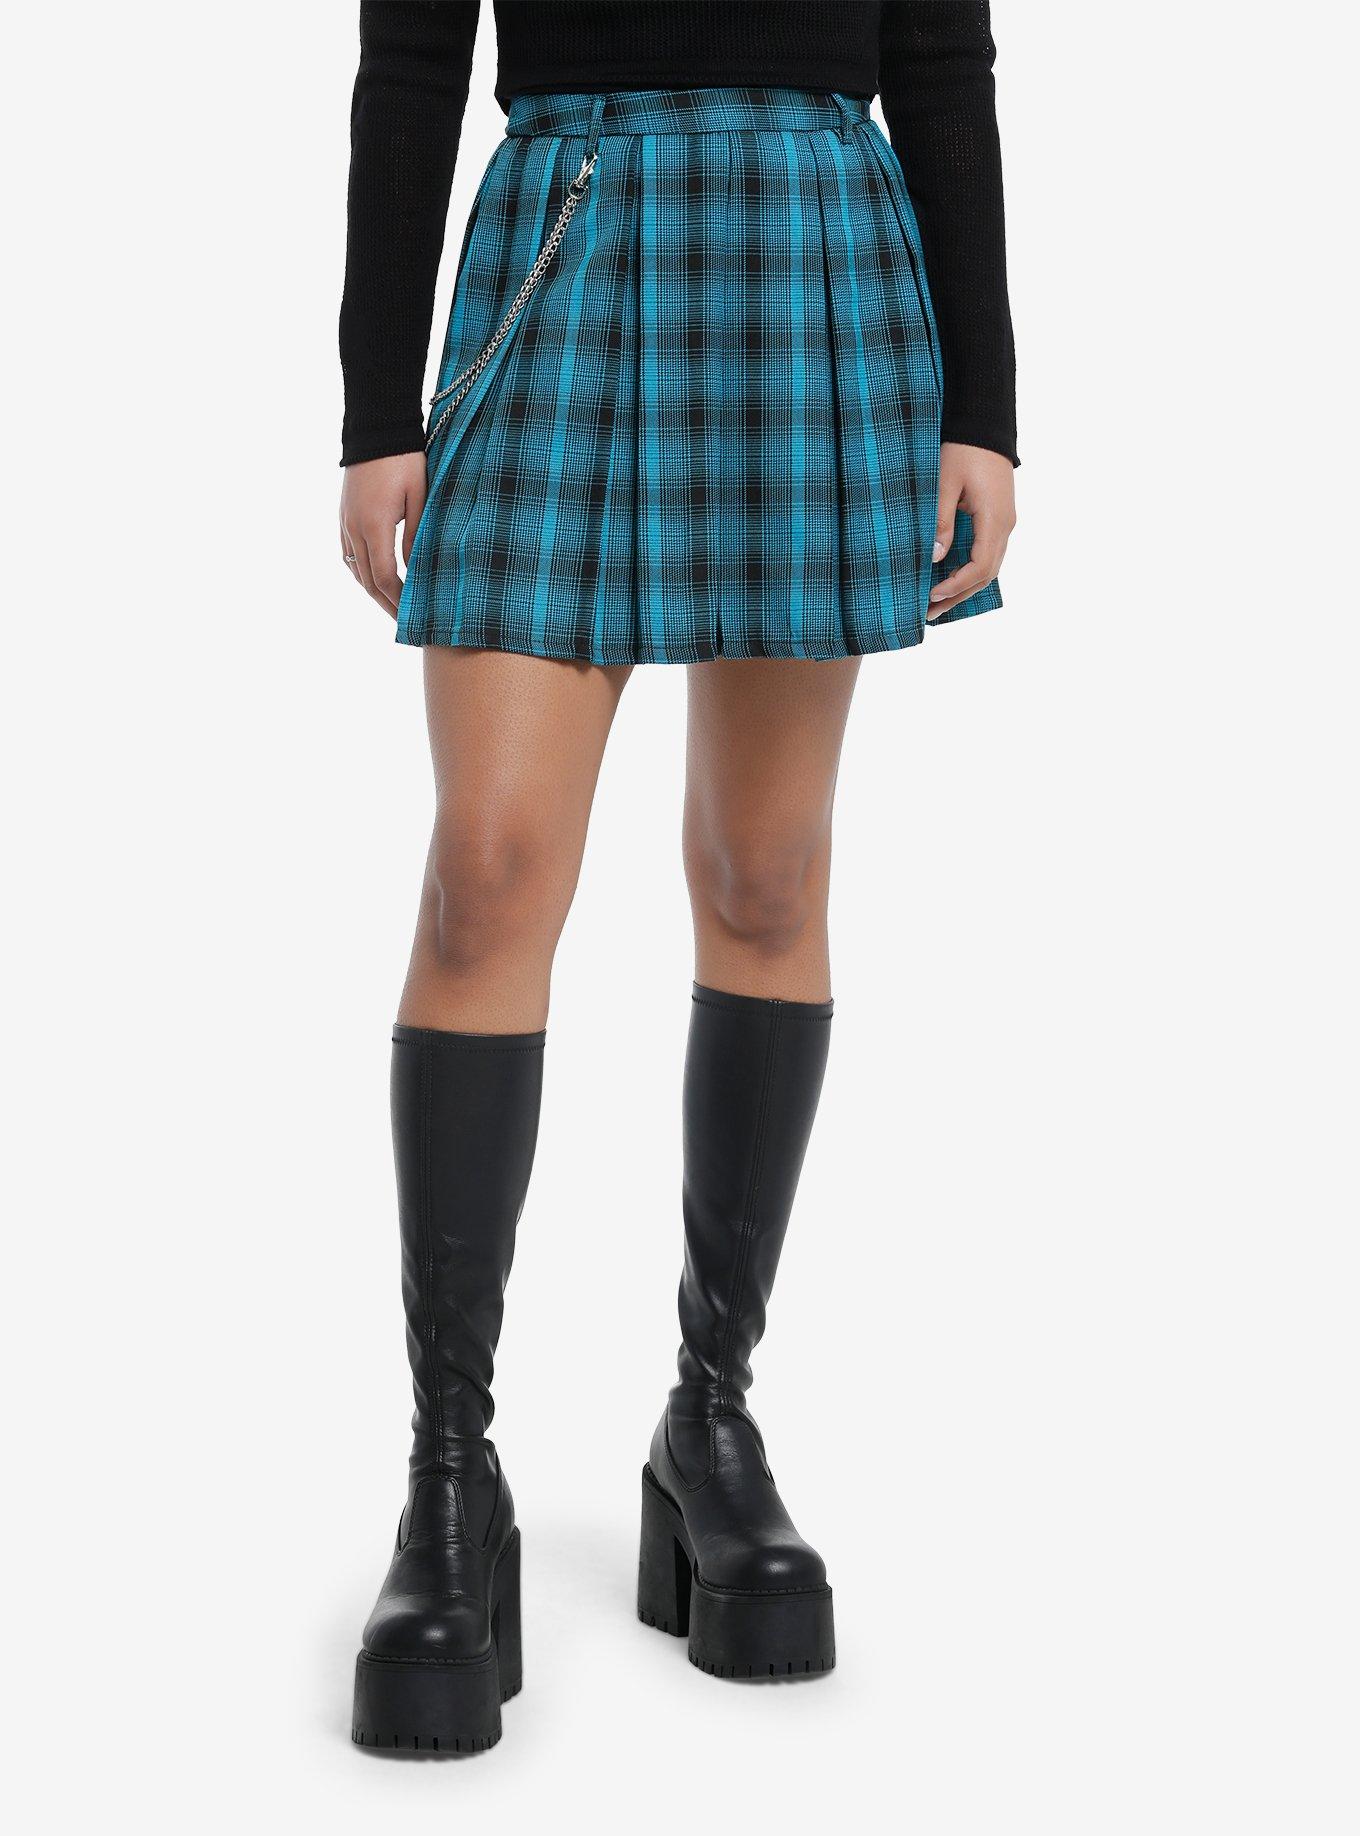 Teal & Black Plaid Pleated Skirt, BLACK, hi-res